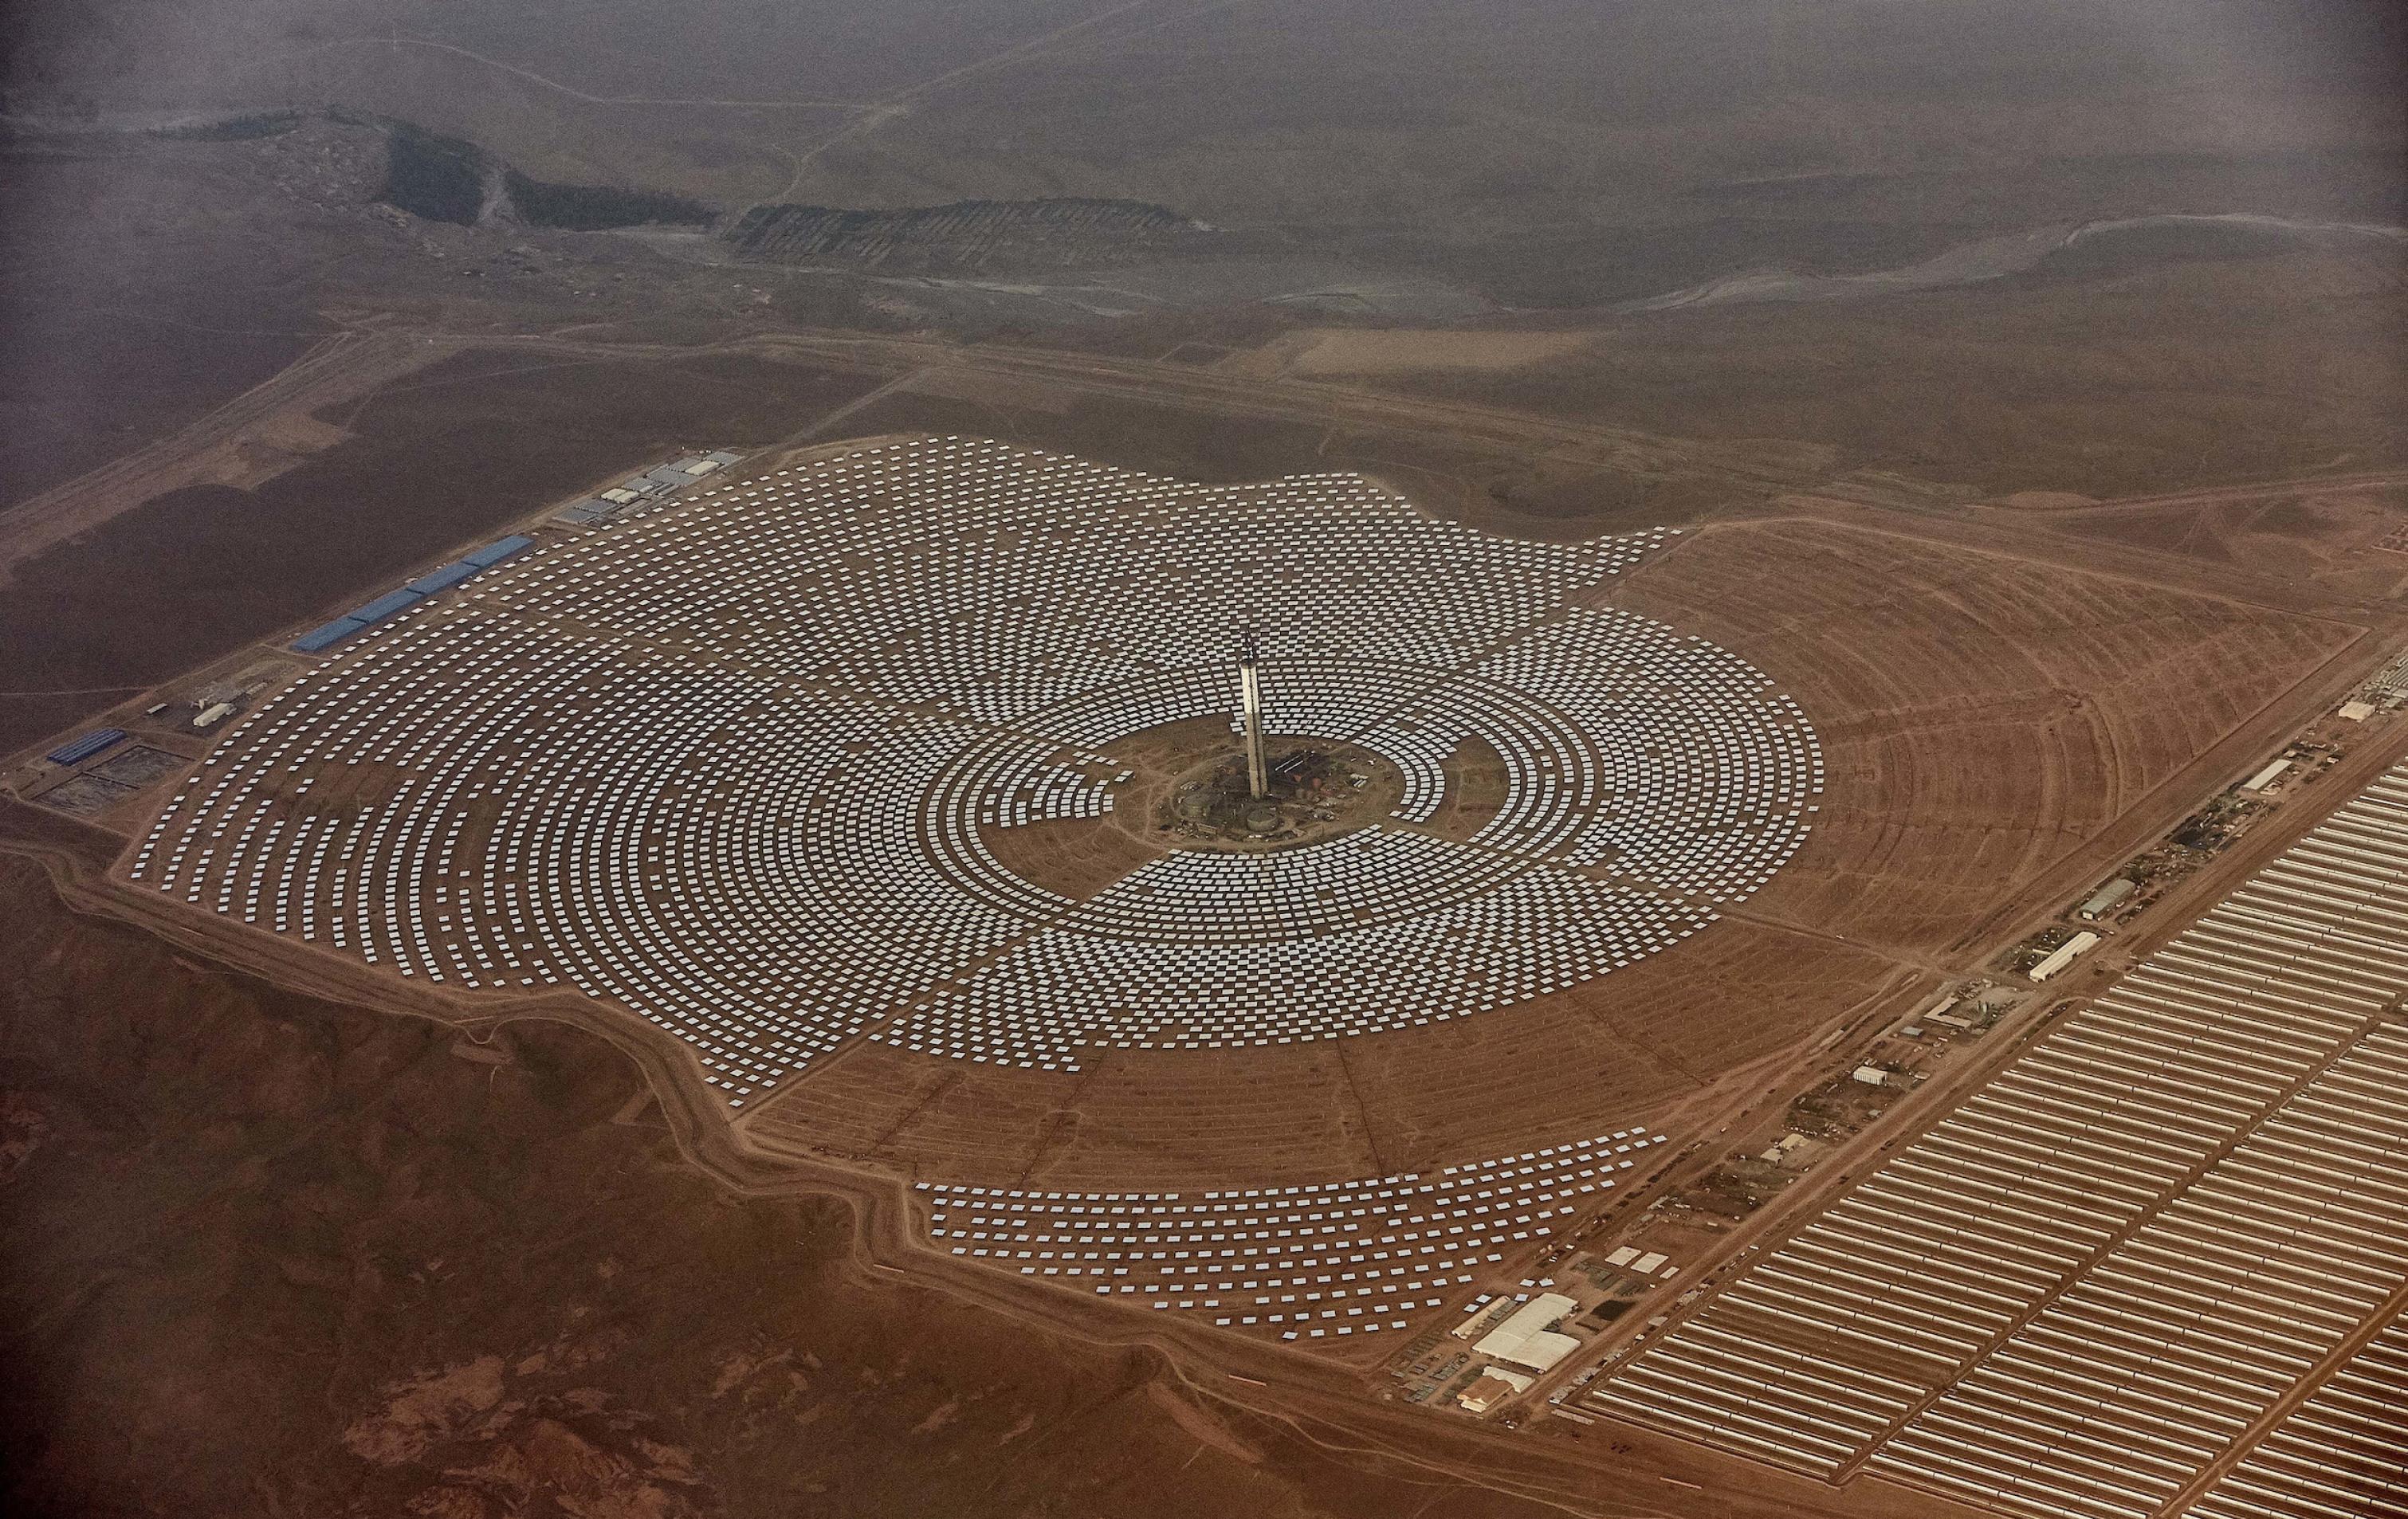 Große Anlage in der Wüste aus der Luft, in der Spiegel in zahlreichen Kreisen angeordnet sind.